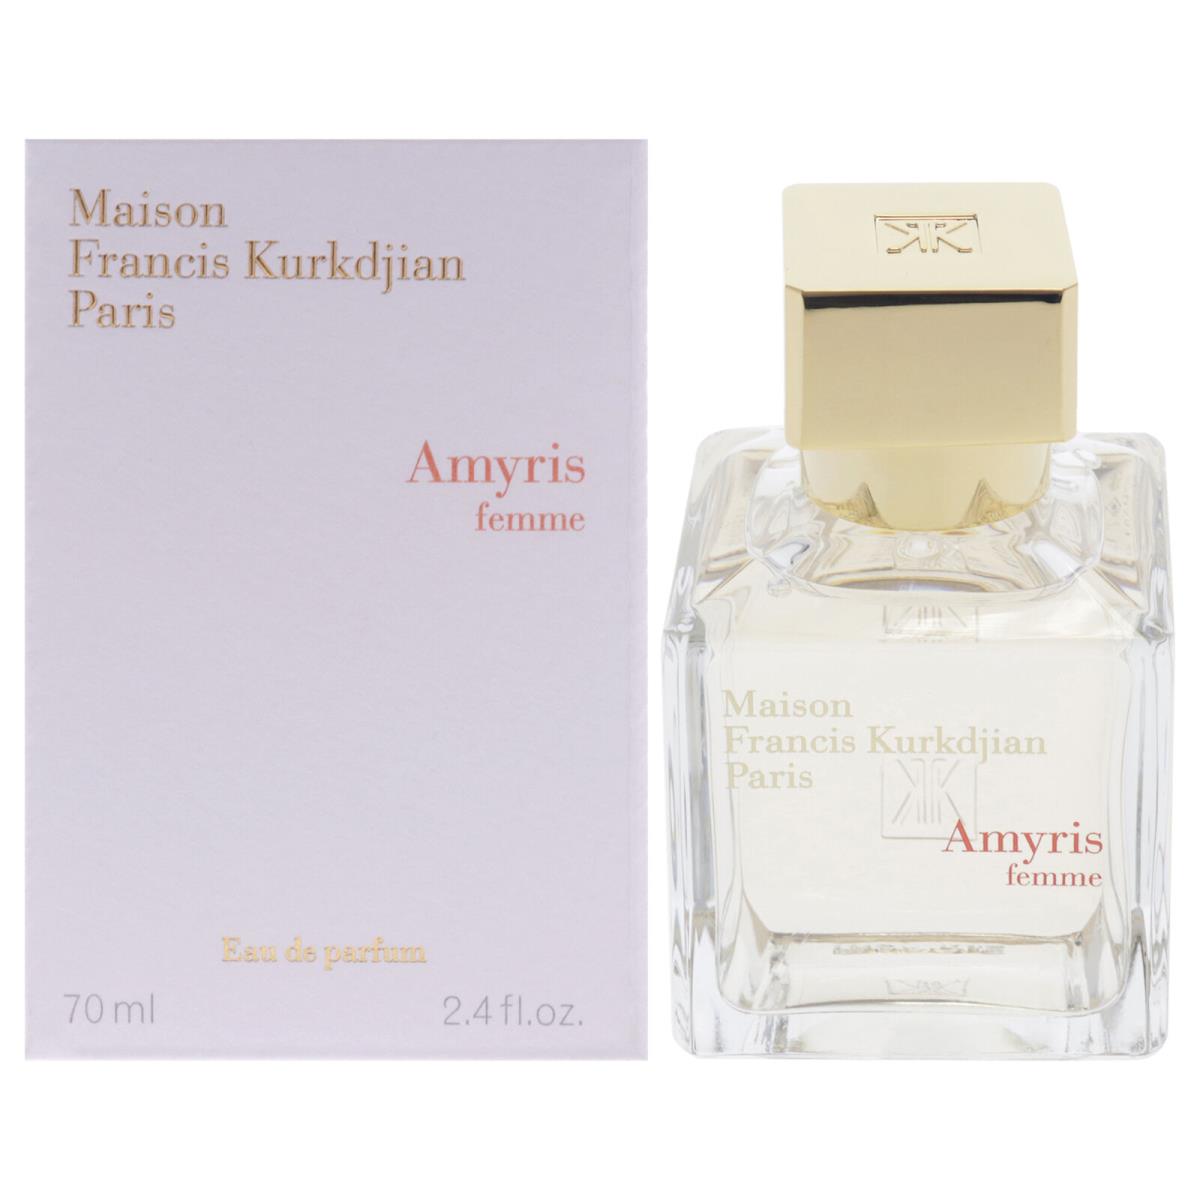 Amyris by Maison Francis Kurkdjian For Women - 2.4 oz Edp Spray